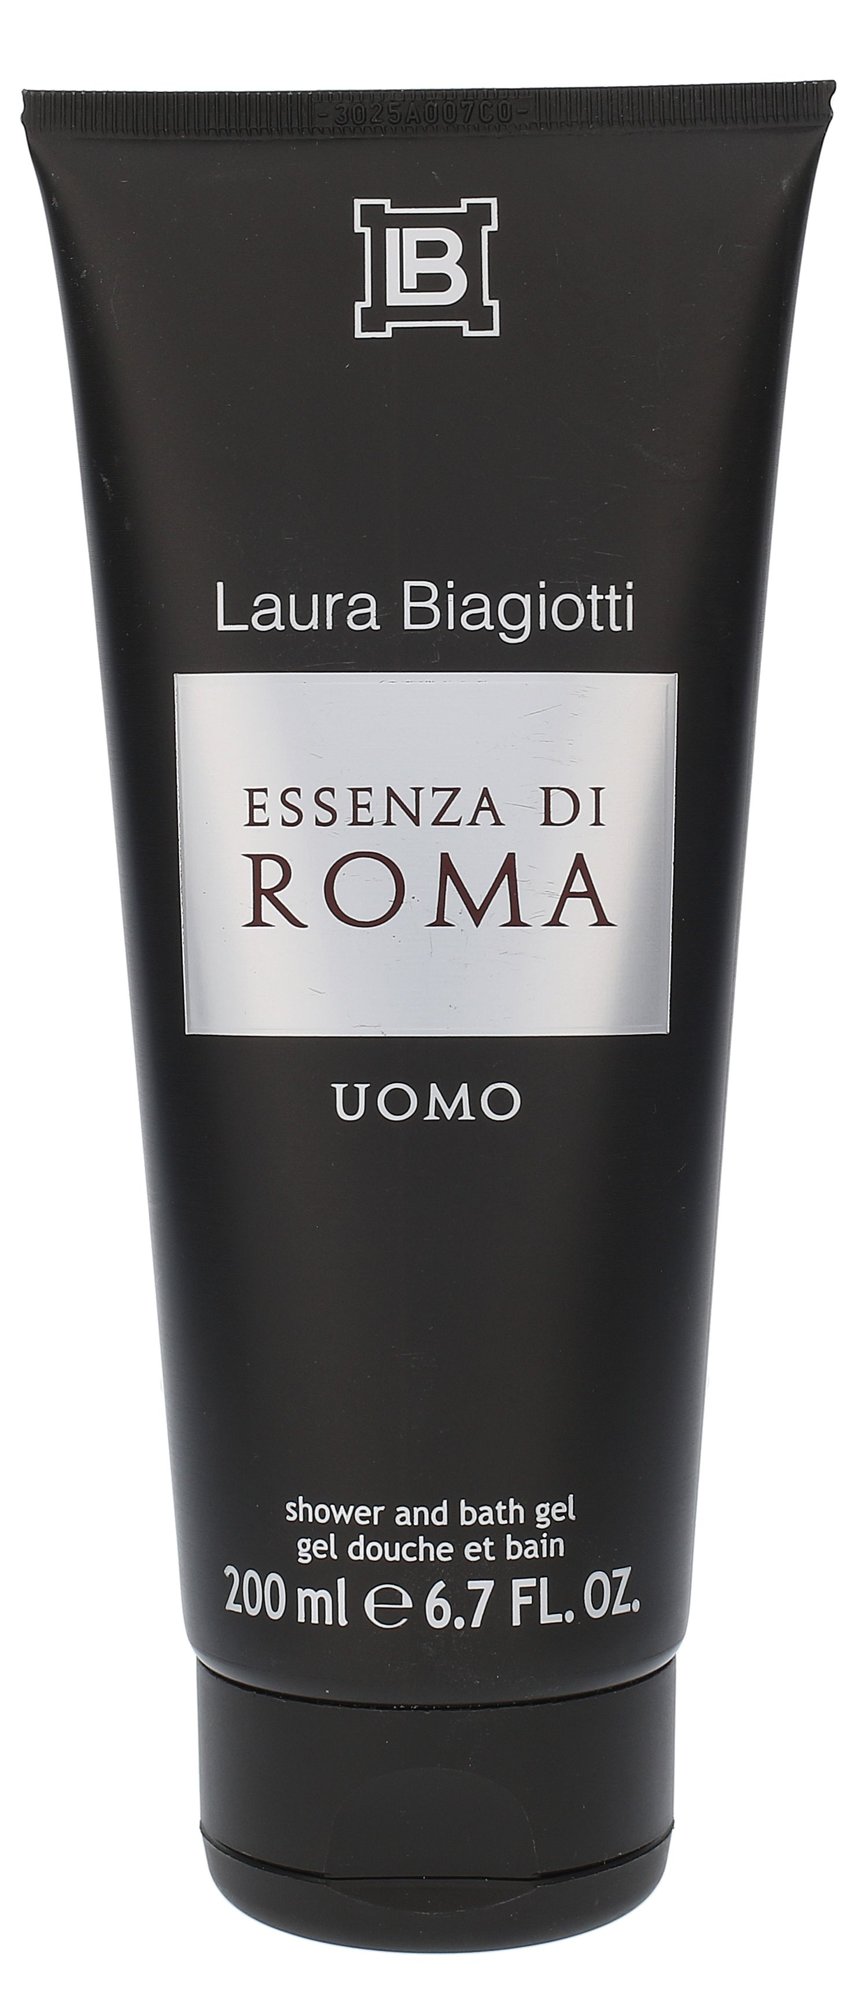 Laura Biagiotti Essenza di Roma Uomo 200ml dušo želė